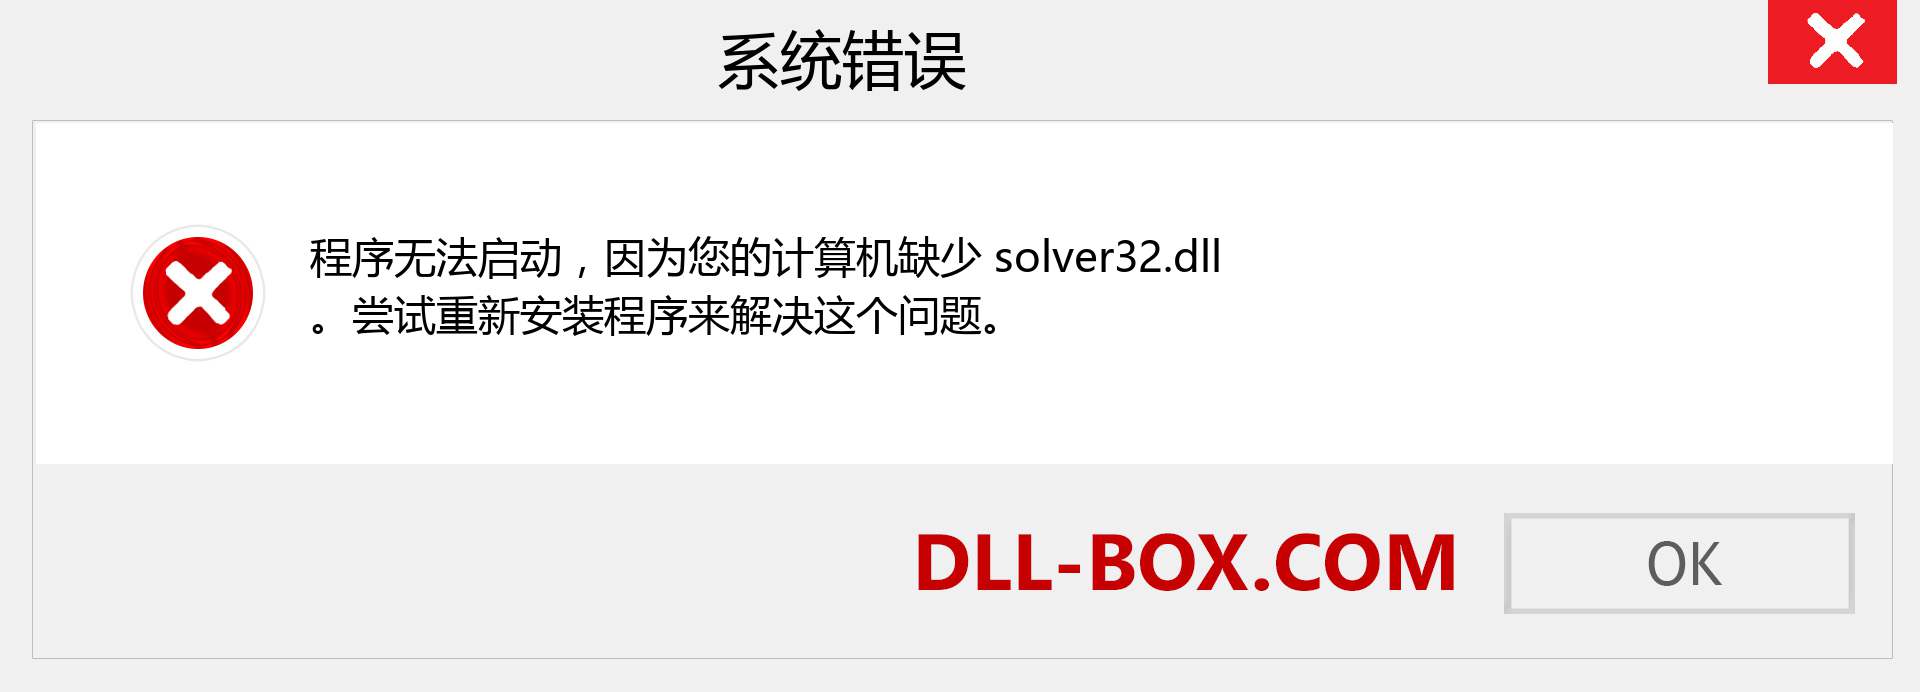 solver32.dll 文件丢失？。 适用于 Windows 7、8、10 的下载 - 修复 Windows、照片、图像上的 solver32 dll 丢失错误